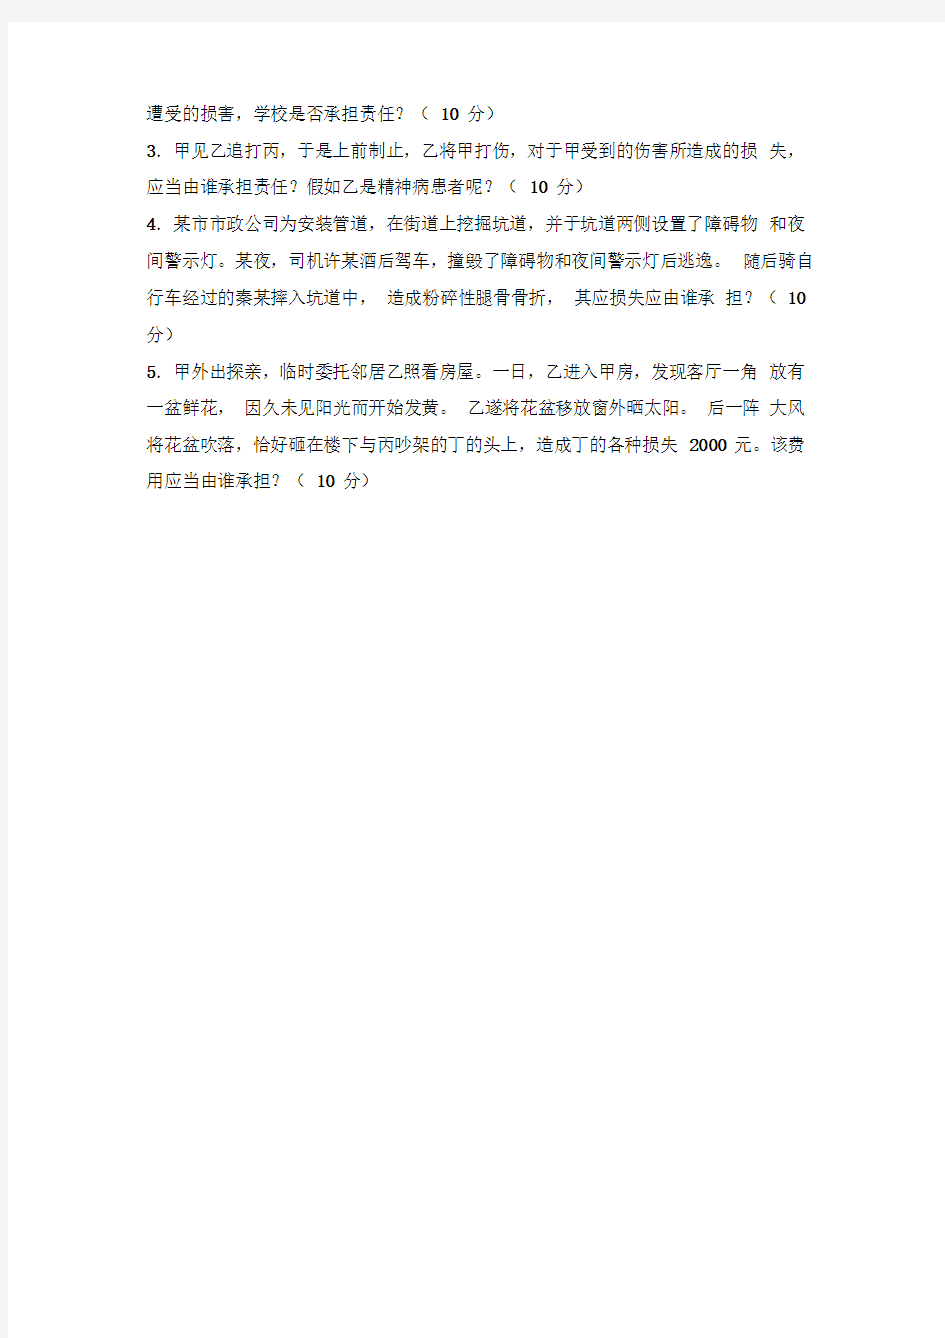 2012郑州大学侵权行为法学试题与答案(部分)